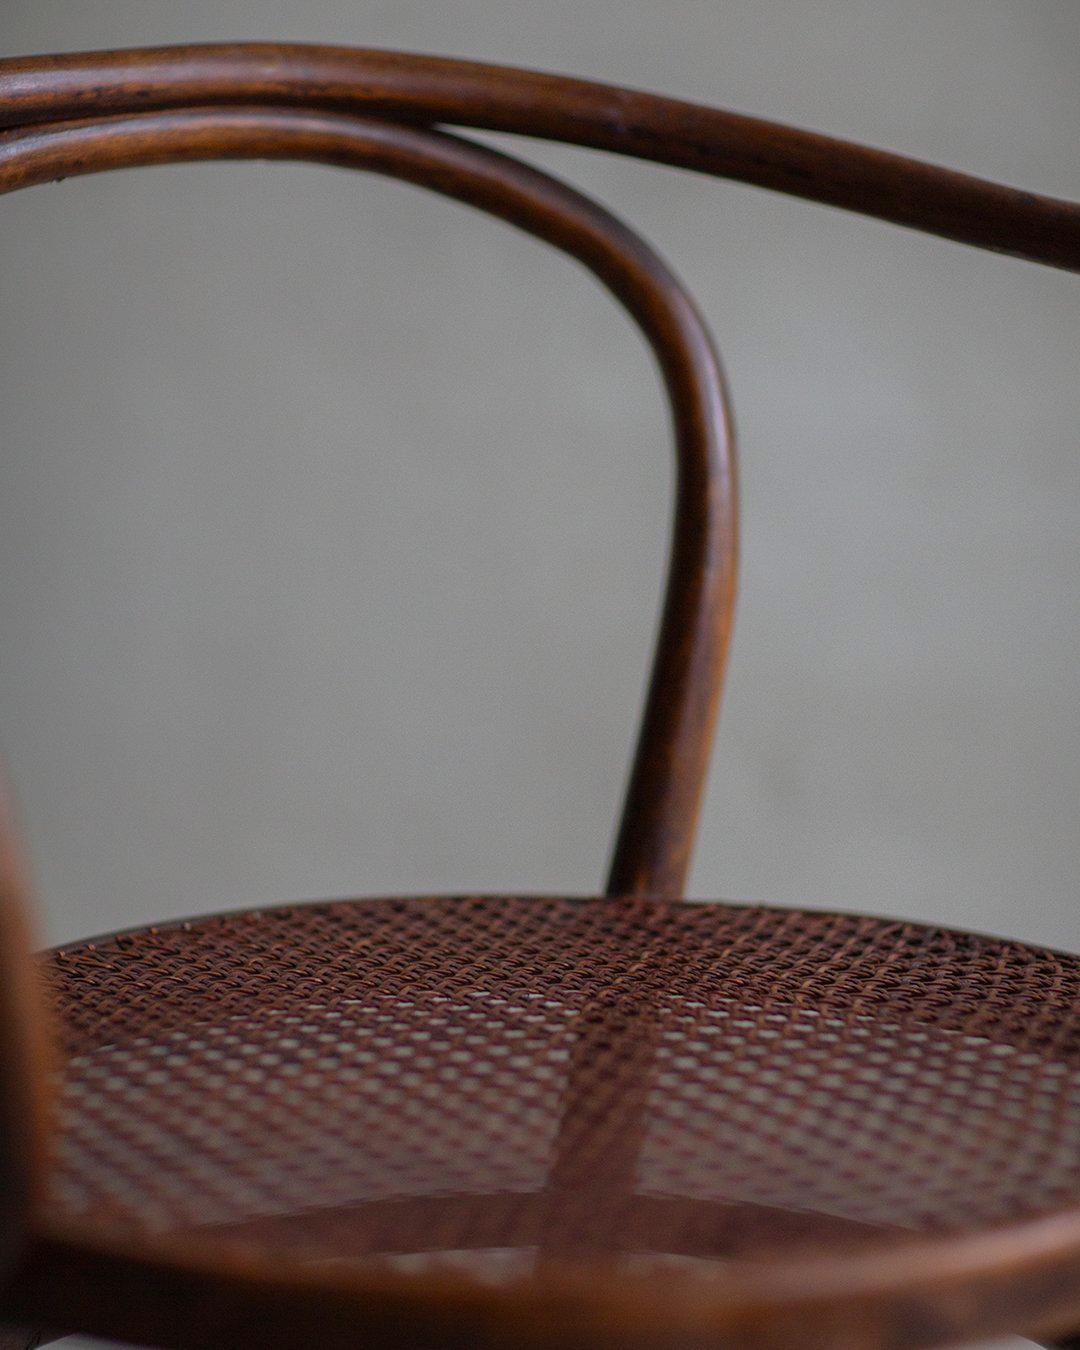 Un classique du design conçu par Le Corbusier, la Chaise 209, signifie le summum de l'artisanat et du design. Cet élégant chef-d'œuvre en bois courbé fait preuve d'une construction et d'un design exceptionnels : fabriqué à partir d'un seul cadre en